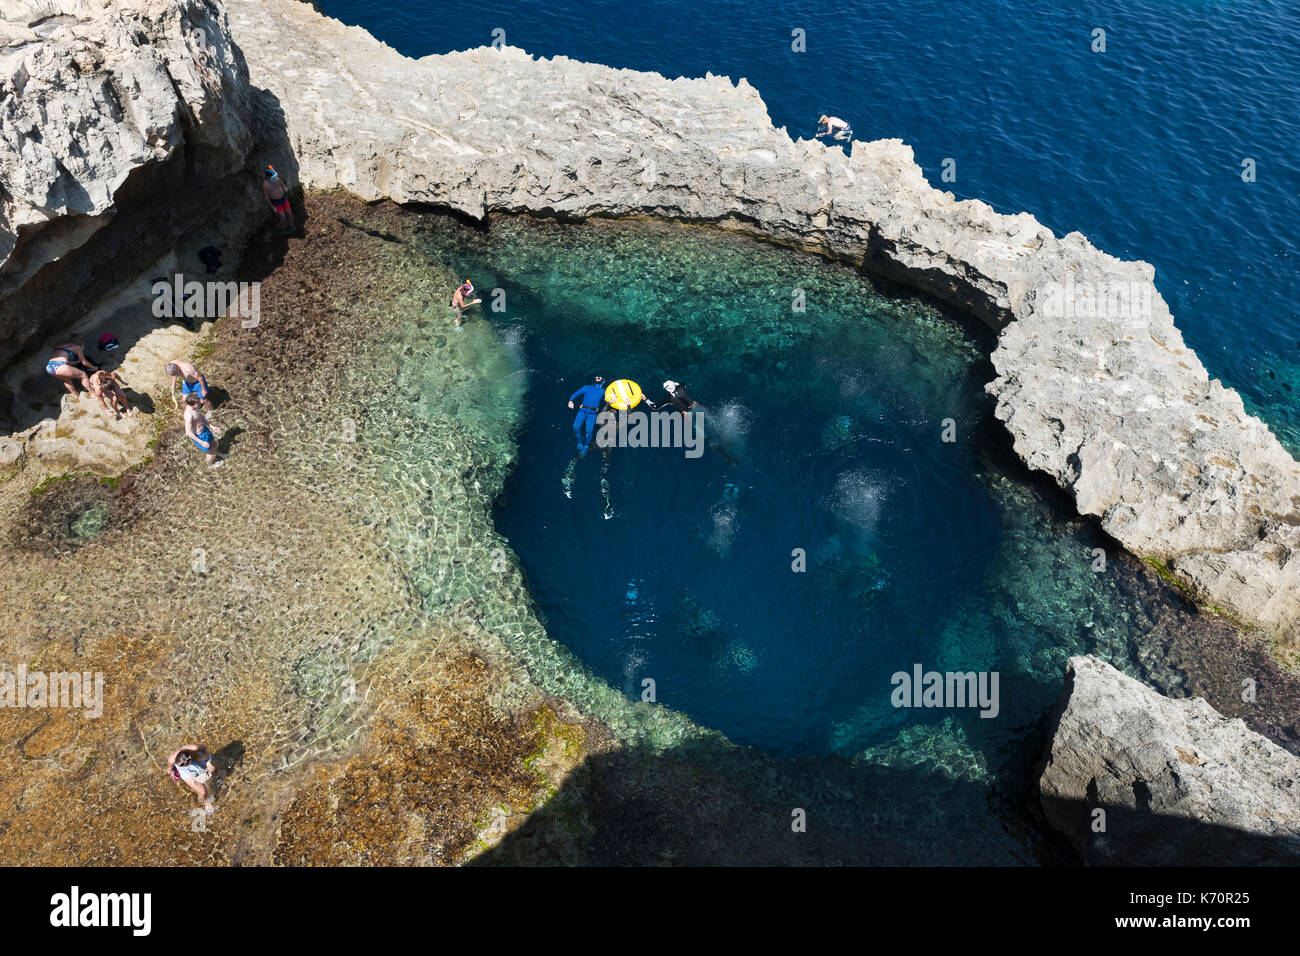 Tauchplatz in der Nähe des ehemaligen Azure Window Rock arch in der Nähe von Dwejra Bay auf der Insel Gozo in Malta. Stockfoto